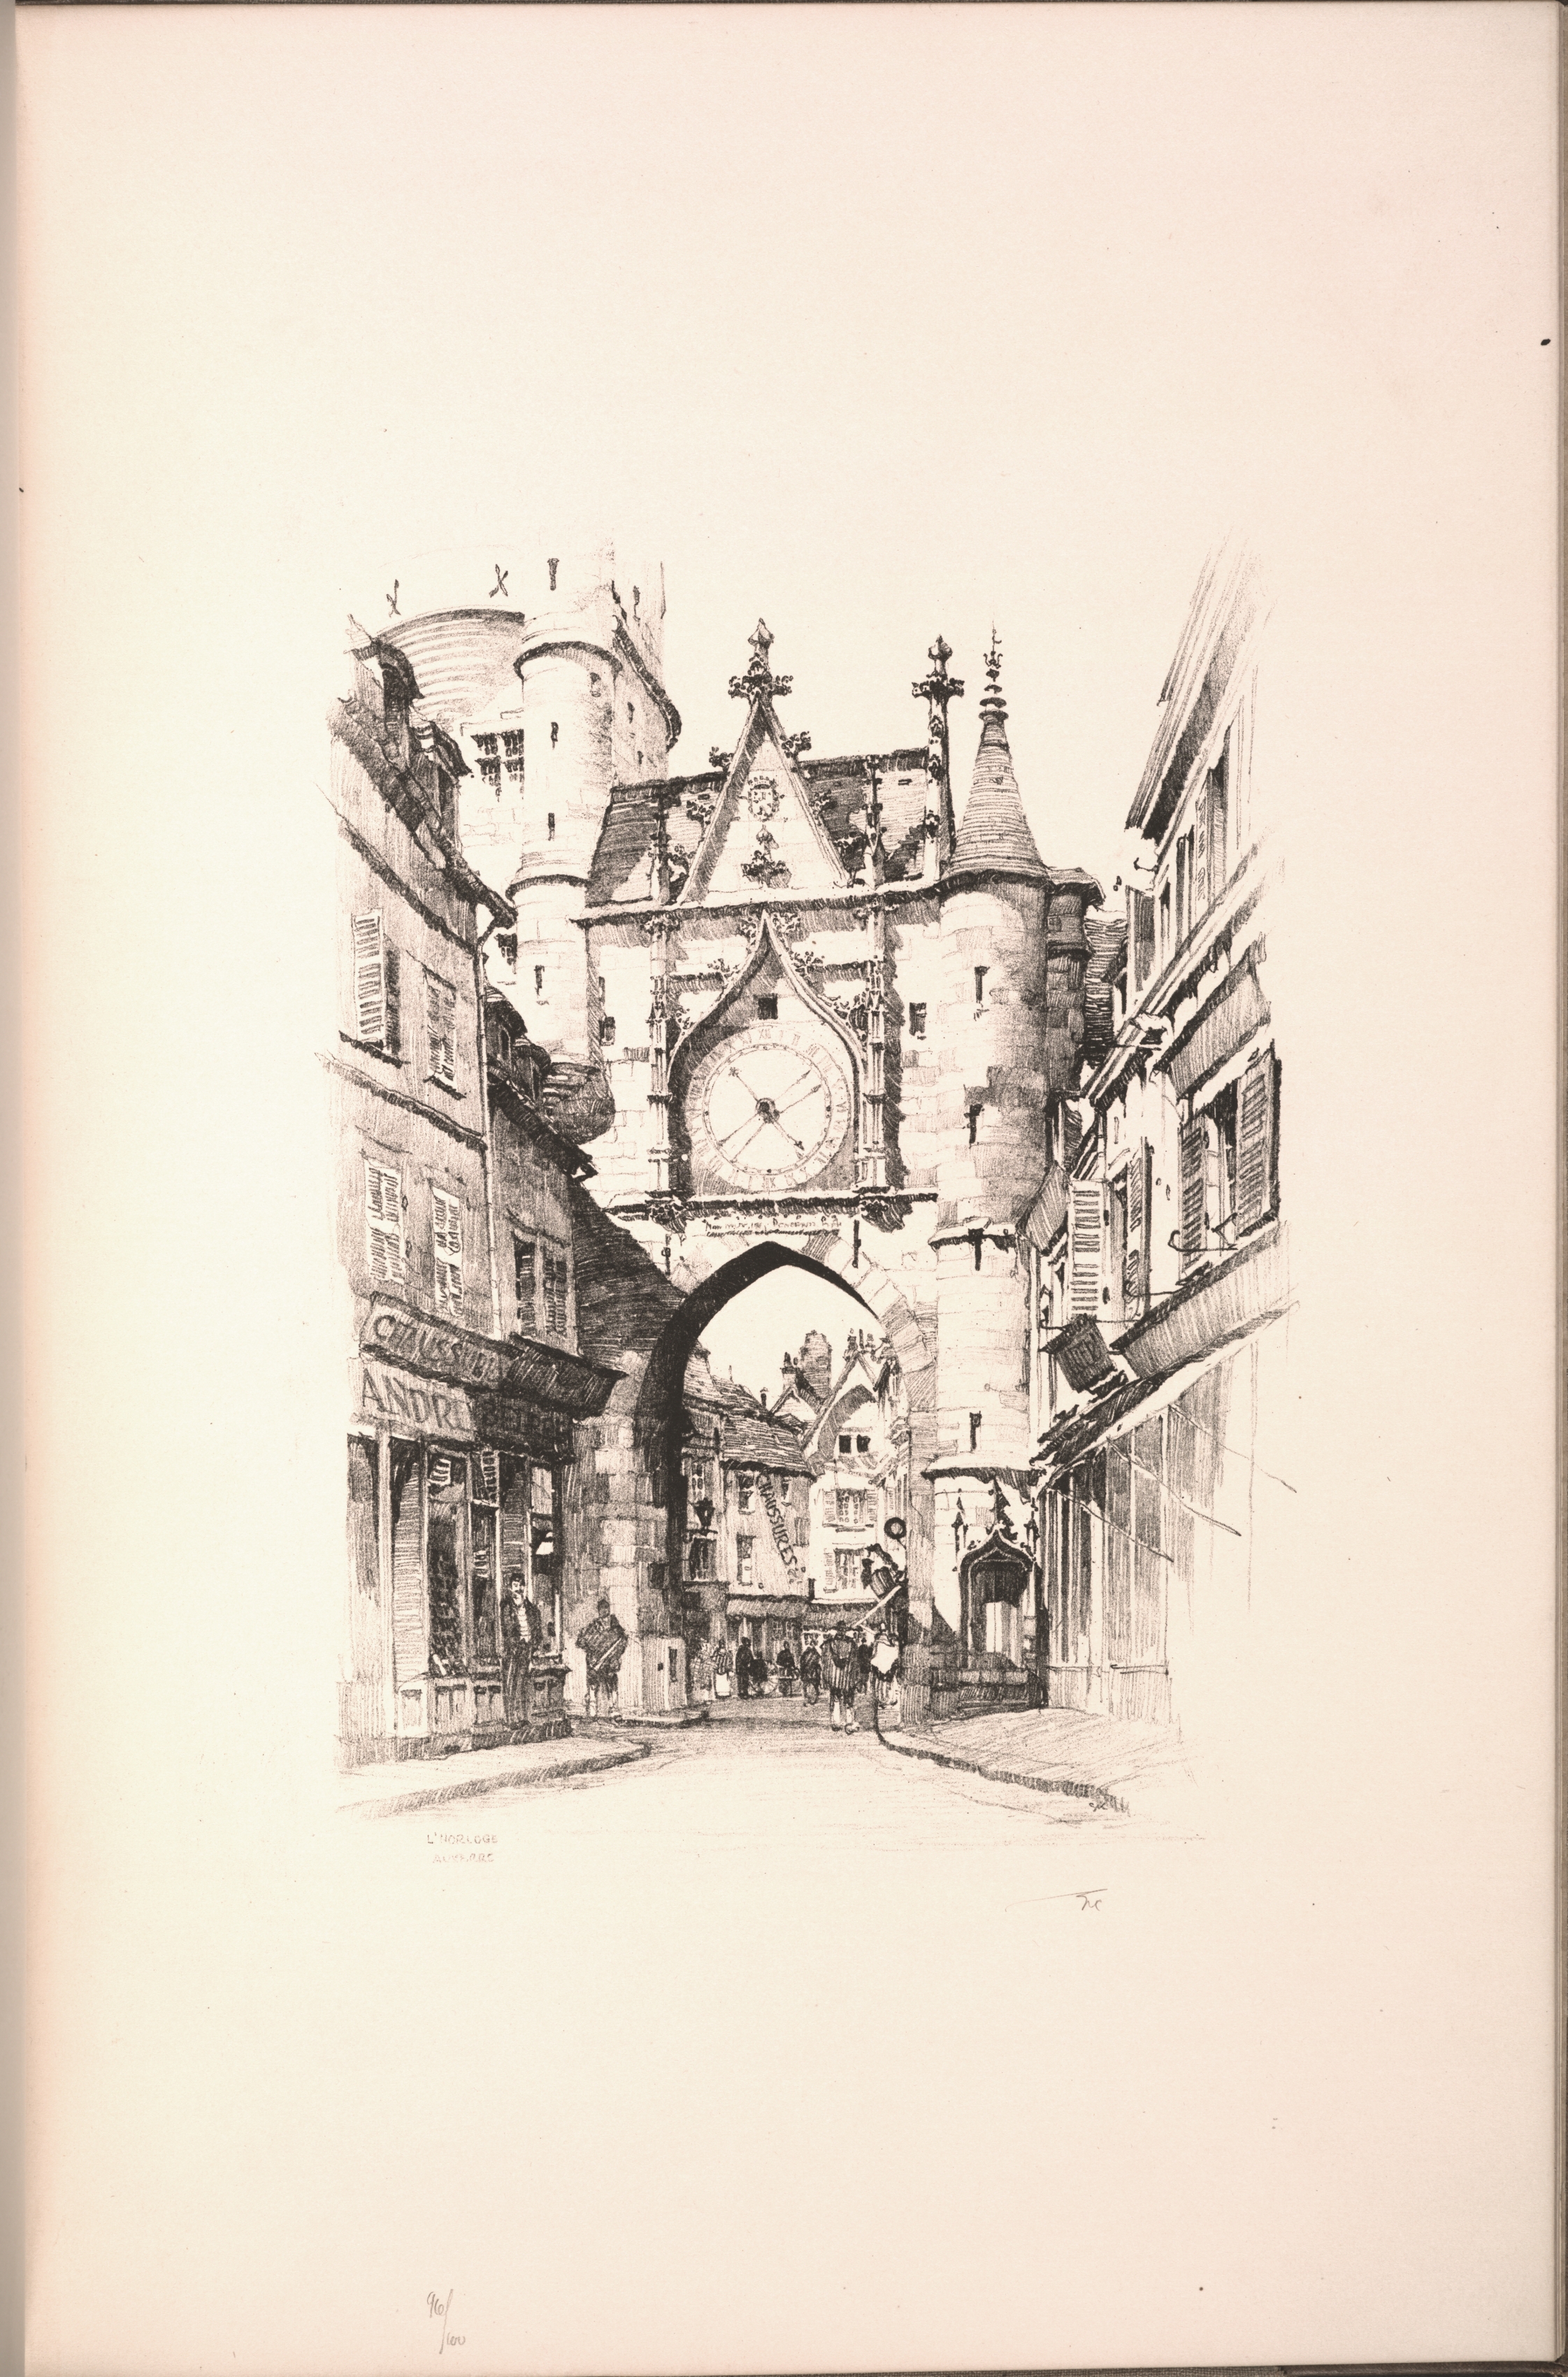 Twenty Lithographs of Old Paris: L'Horloge, Auxerre